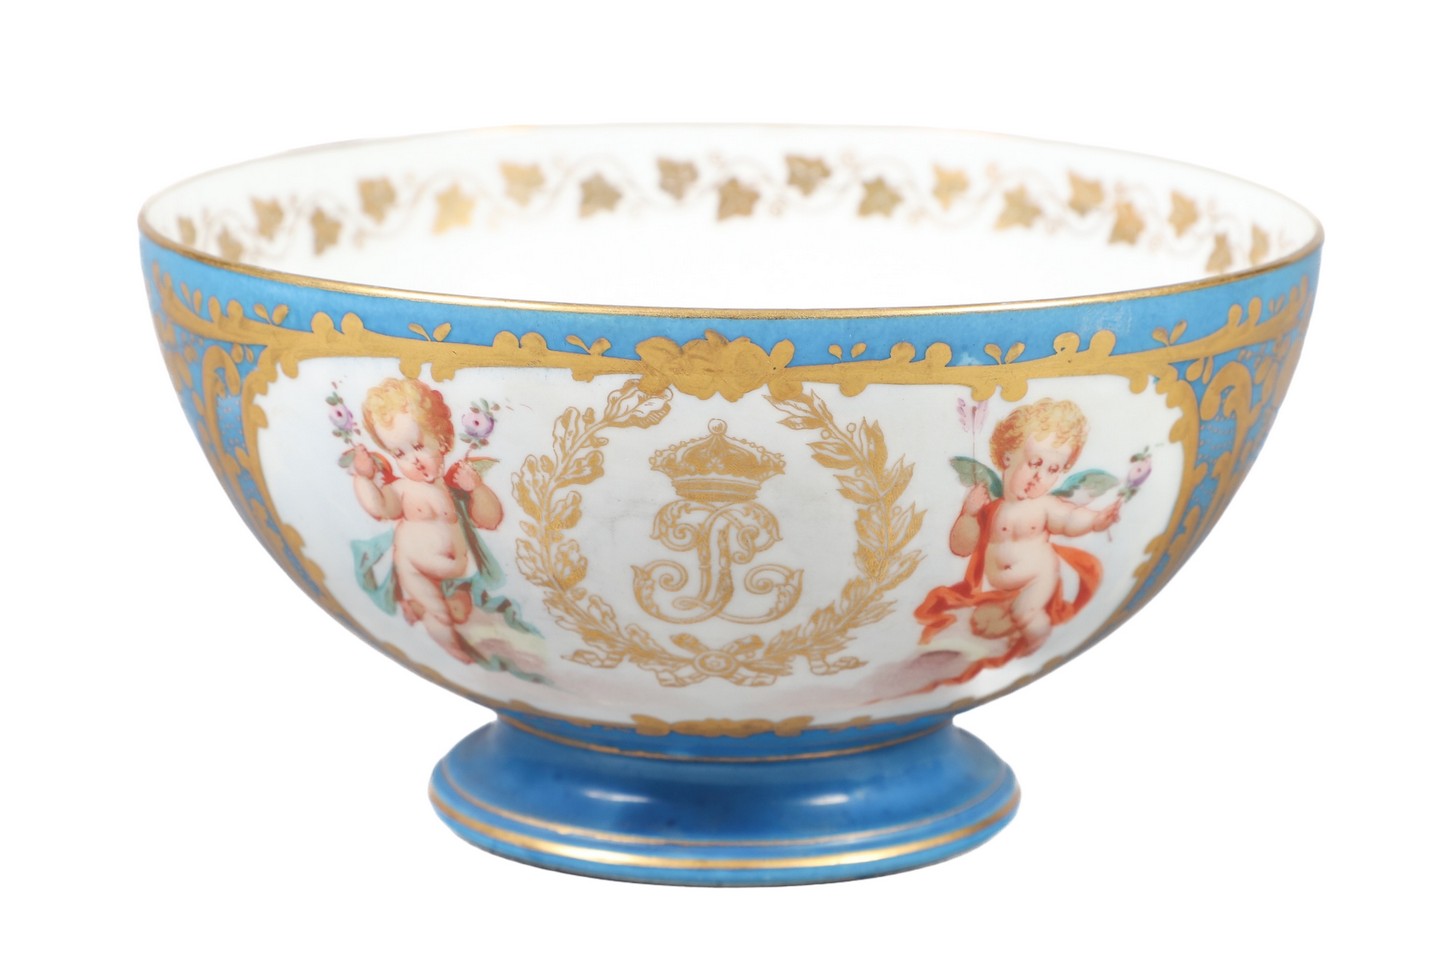 Sevres porcelain cherub bowl front 2e05fa